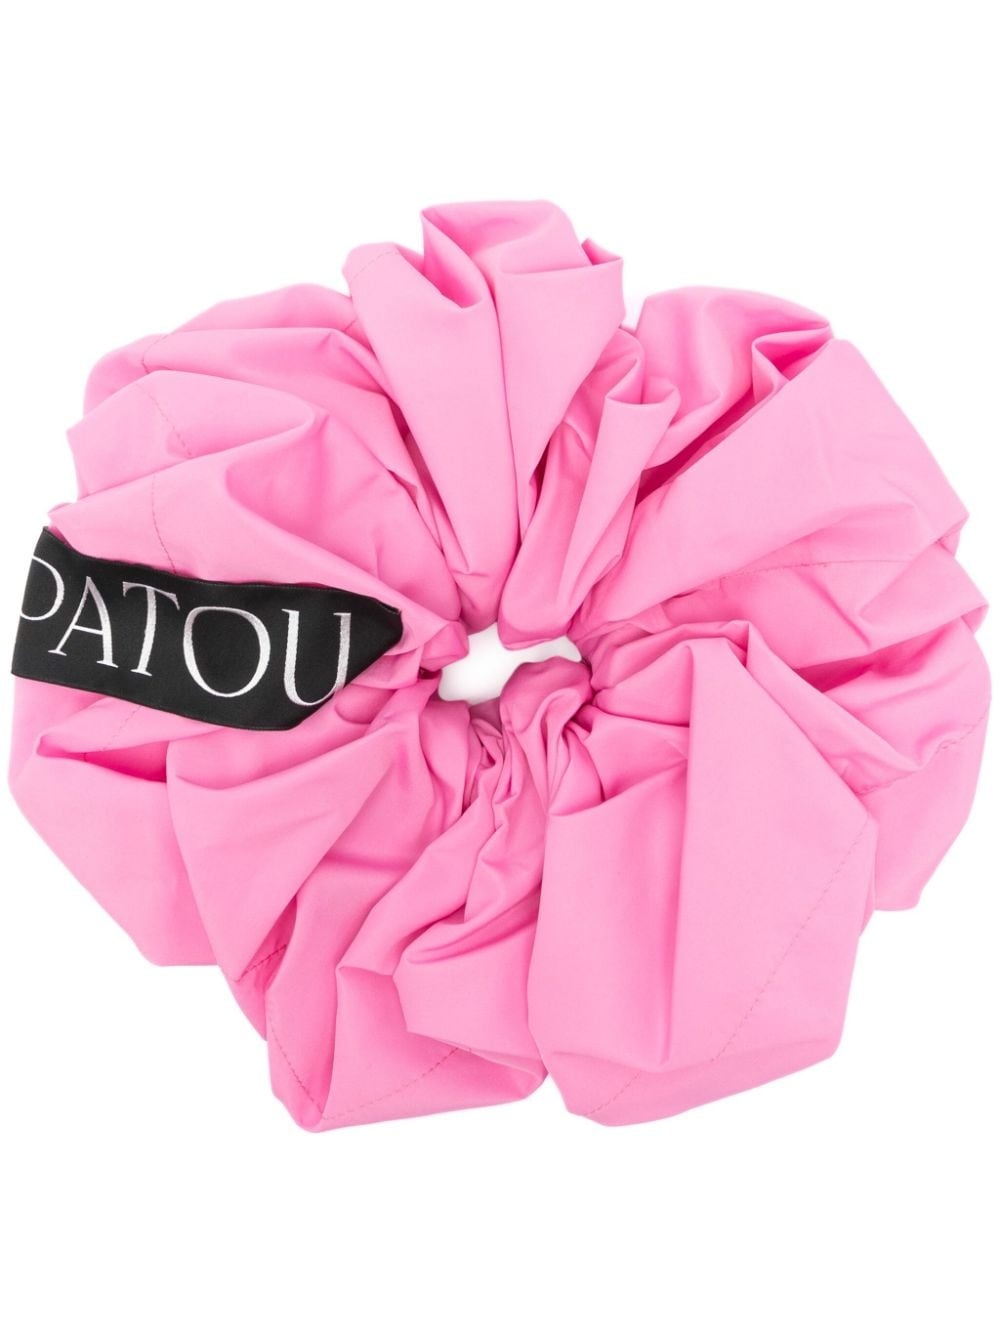 Large Patou cotton scrunchie - 1